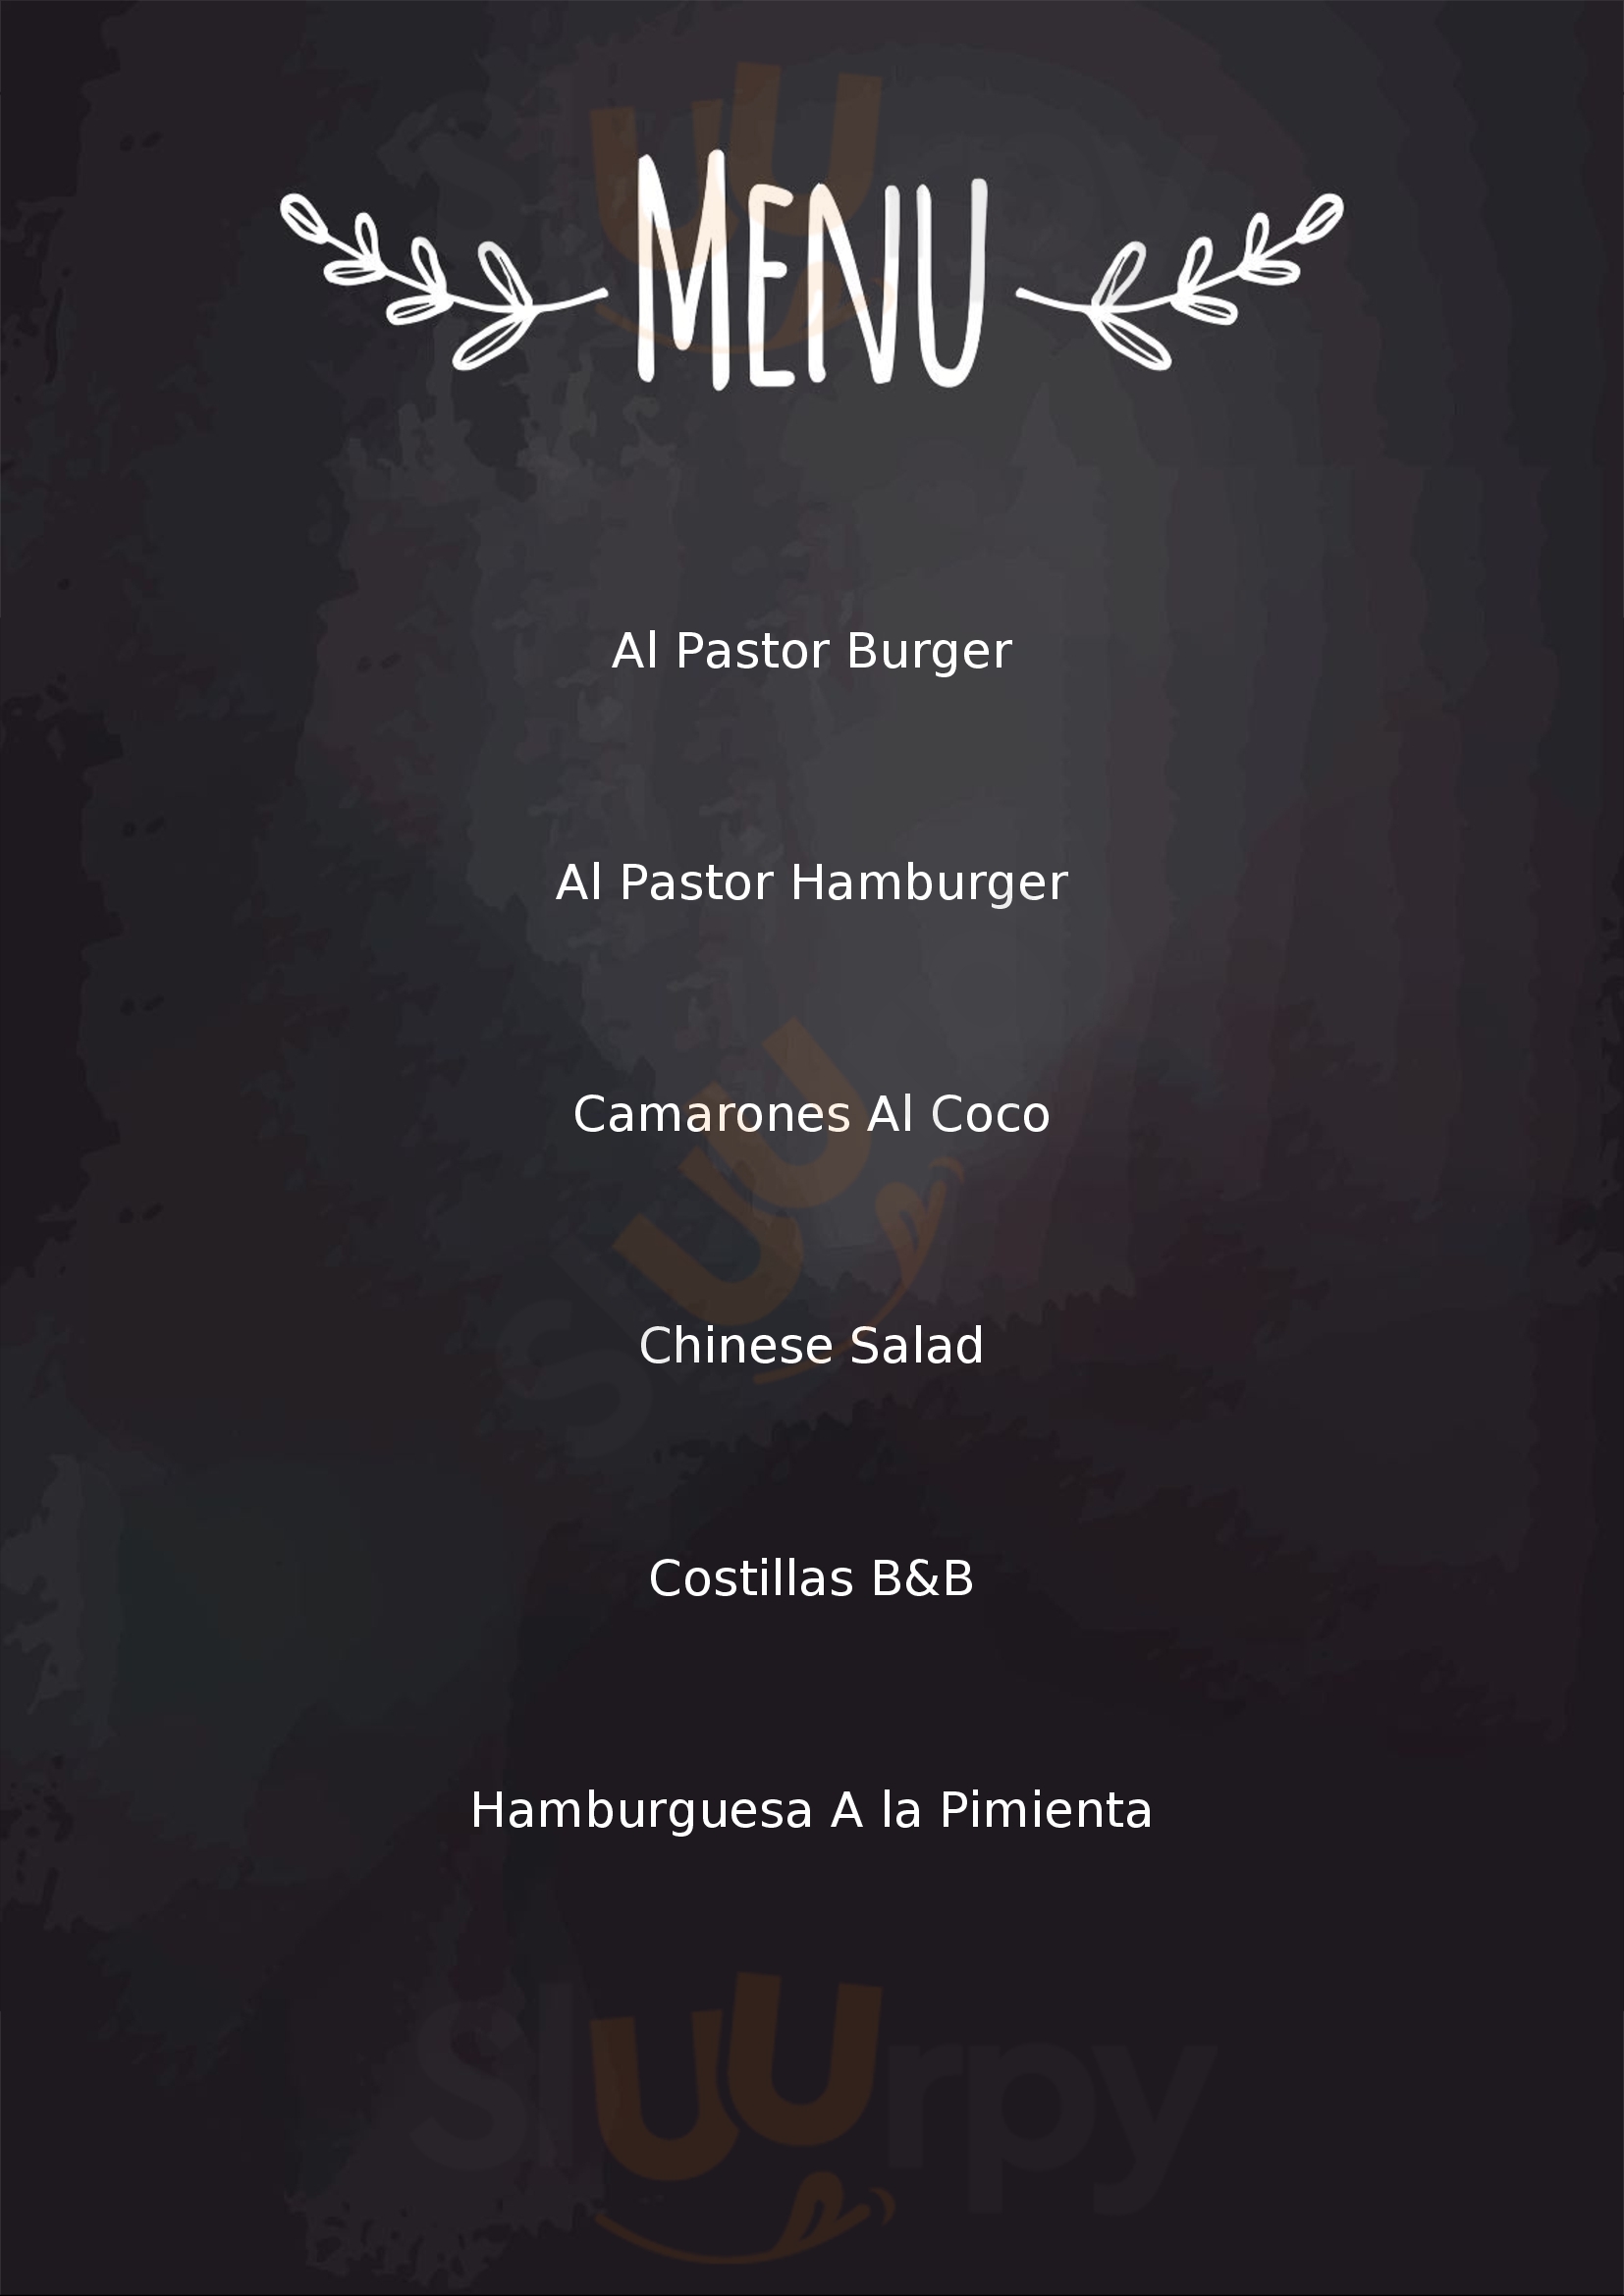 The Burger Custom Made At Vidanta Nuevo Vallarta Nuevo Vallarta Menu - 1